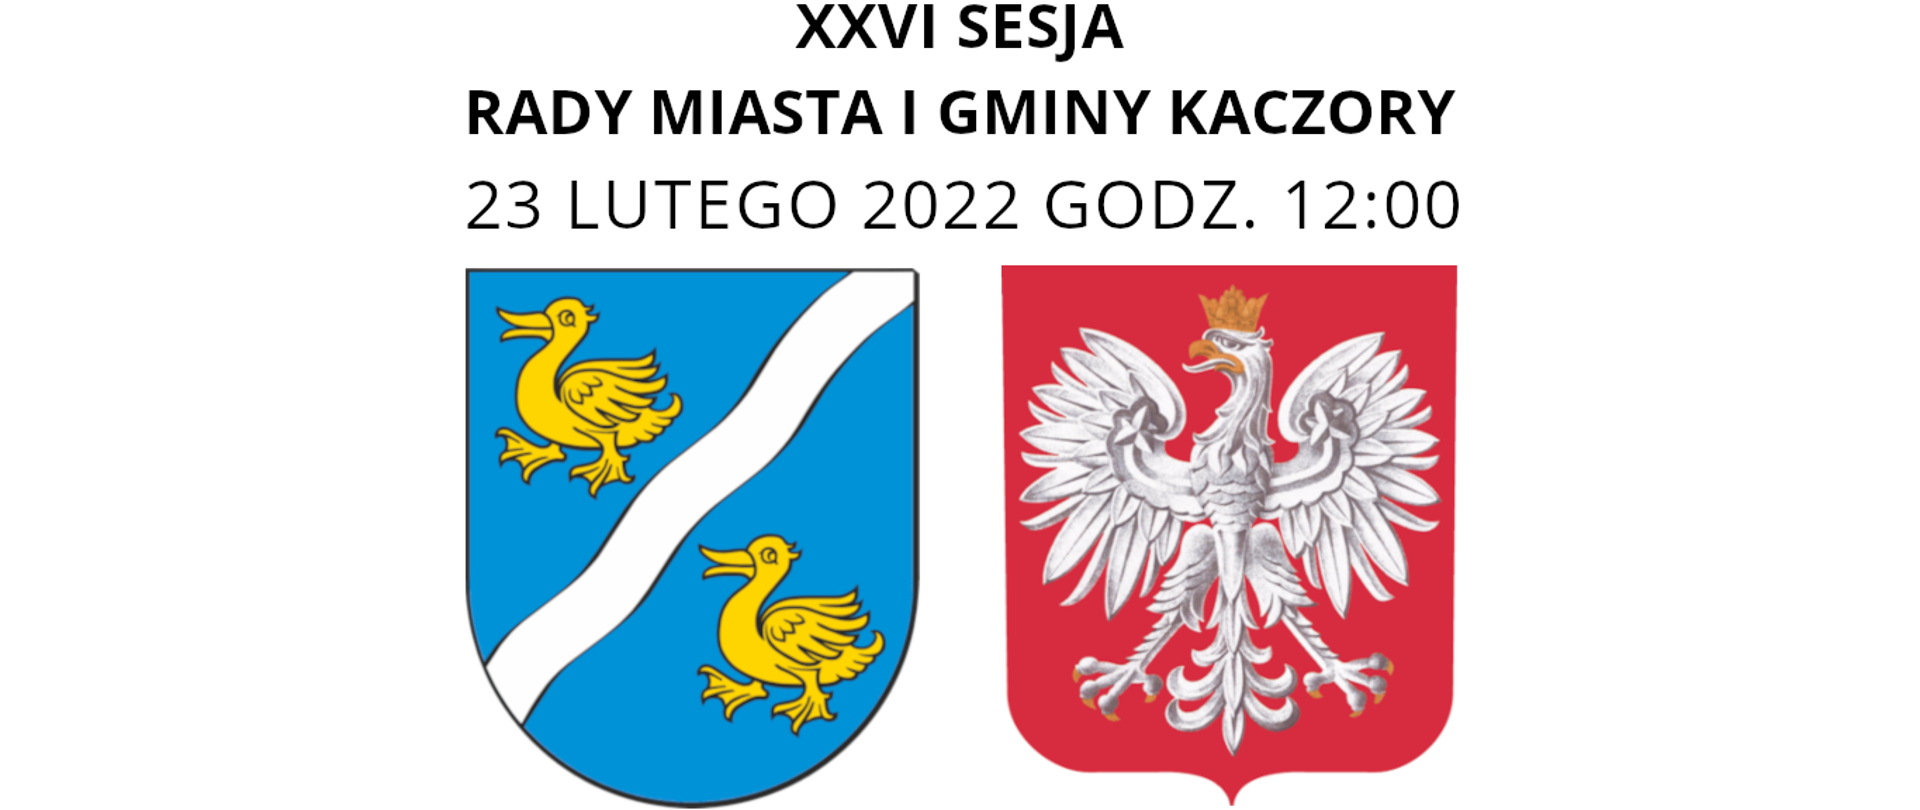 Napis XXVI SESJA RADY MIASTA I GMINY KACZORY z datą 23 lutego 2022 i godziną 12:00 oraz herbami.